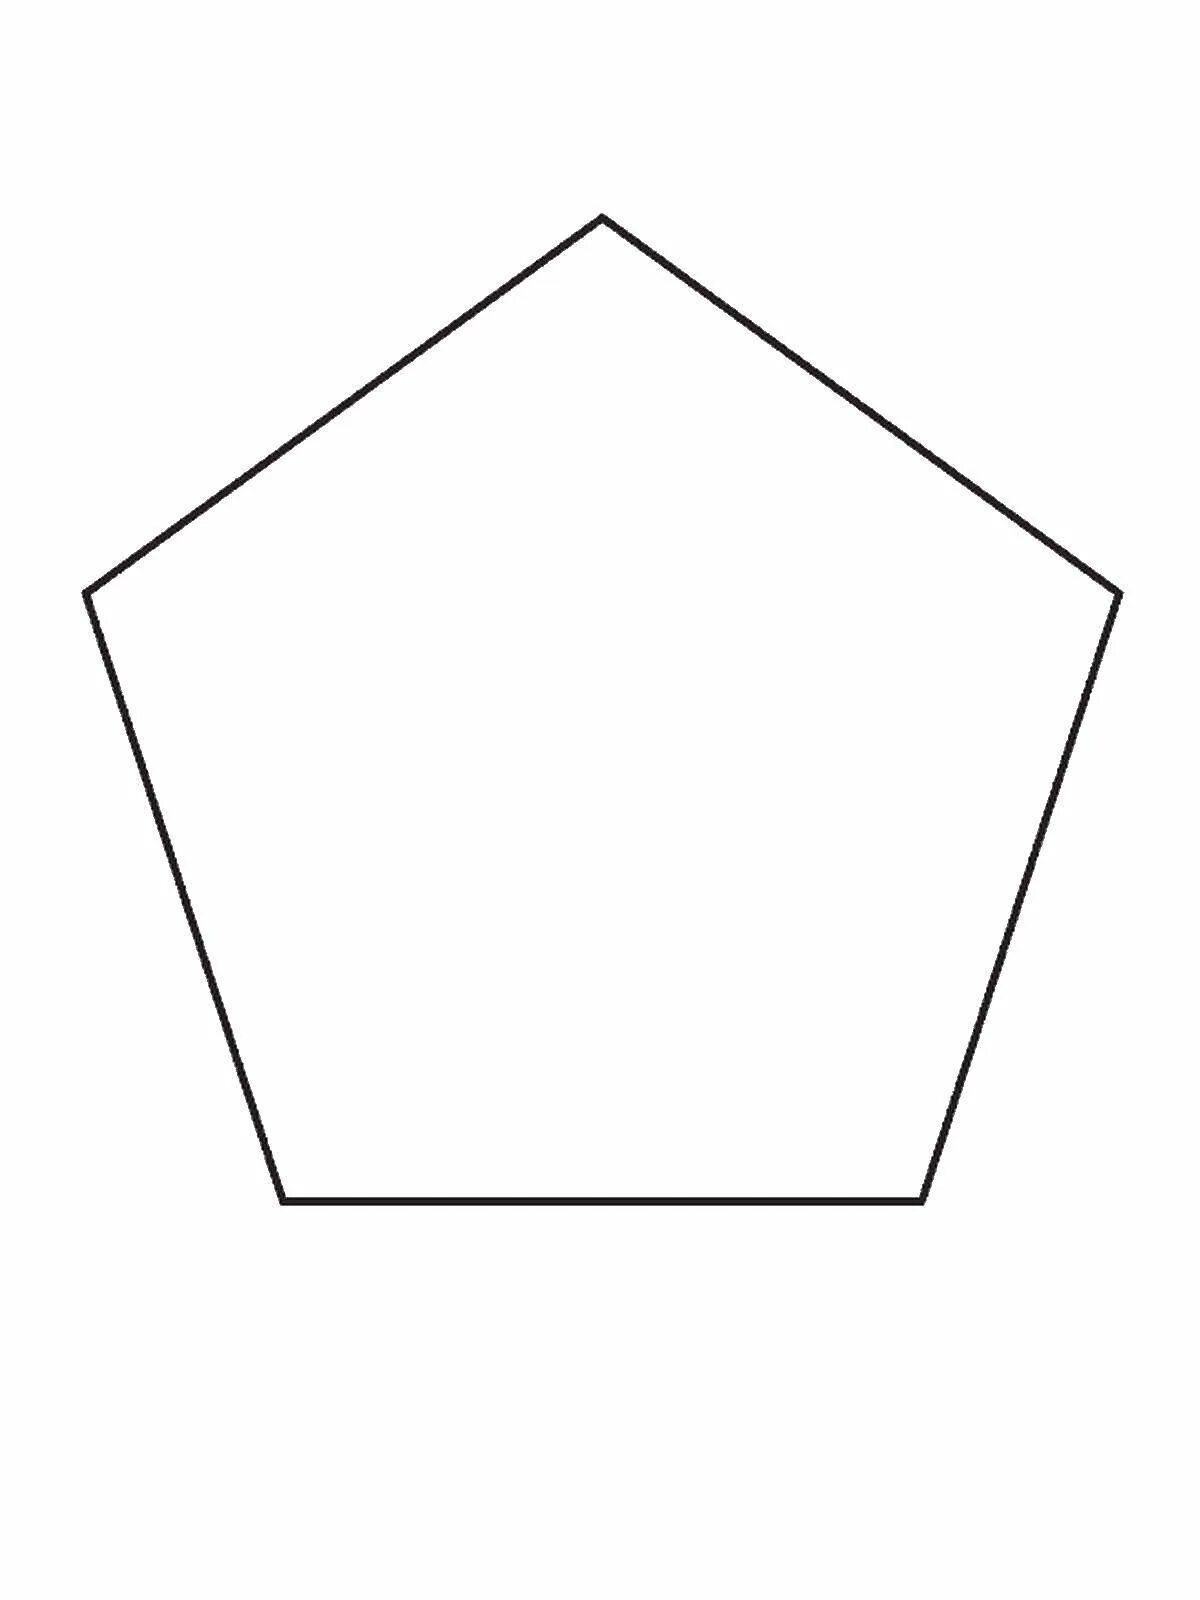 Вырезал из бумаги несколько пятиугольников и семиугольников. Шестиугольник 5на5. Трафарет многоугольника. Геометрические фигуры пятиугольник. Правильный пятиугольник.